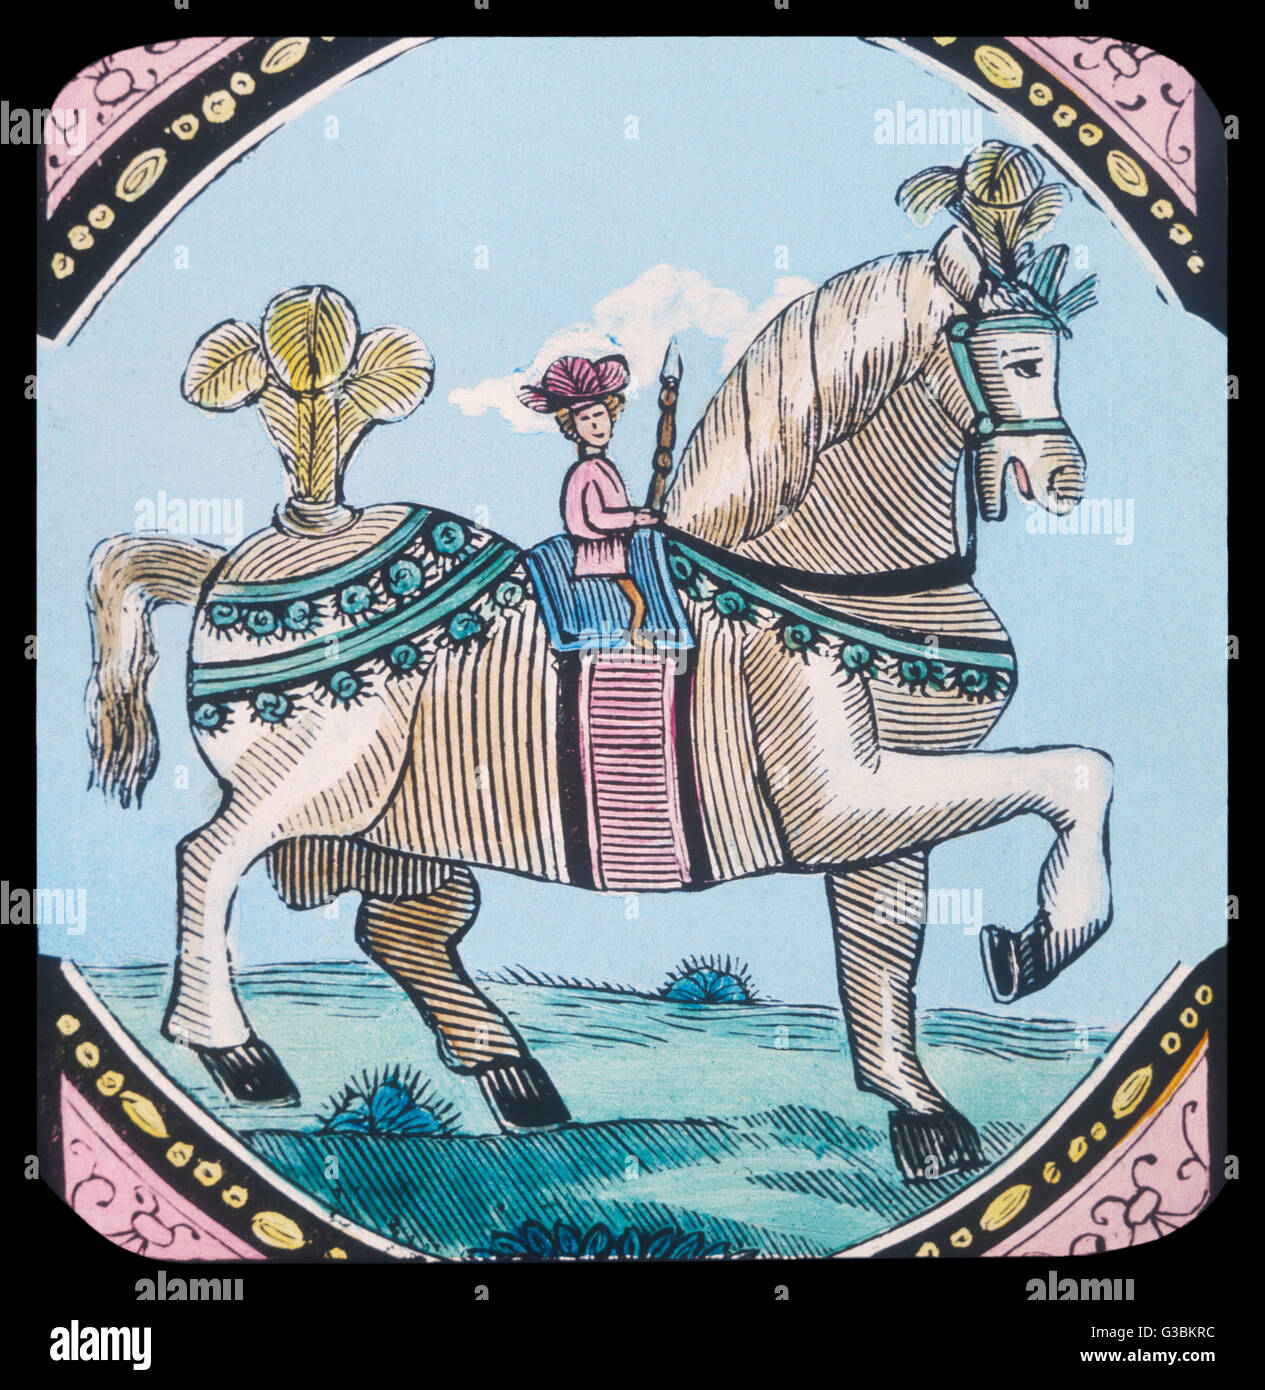 Tom Thumb, el héroe de un cuento de vivero del siglo XVI - se proporciona con un caballo con el cual puede realizar gestas caballerescas. Foto de stock